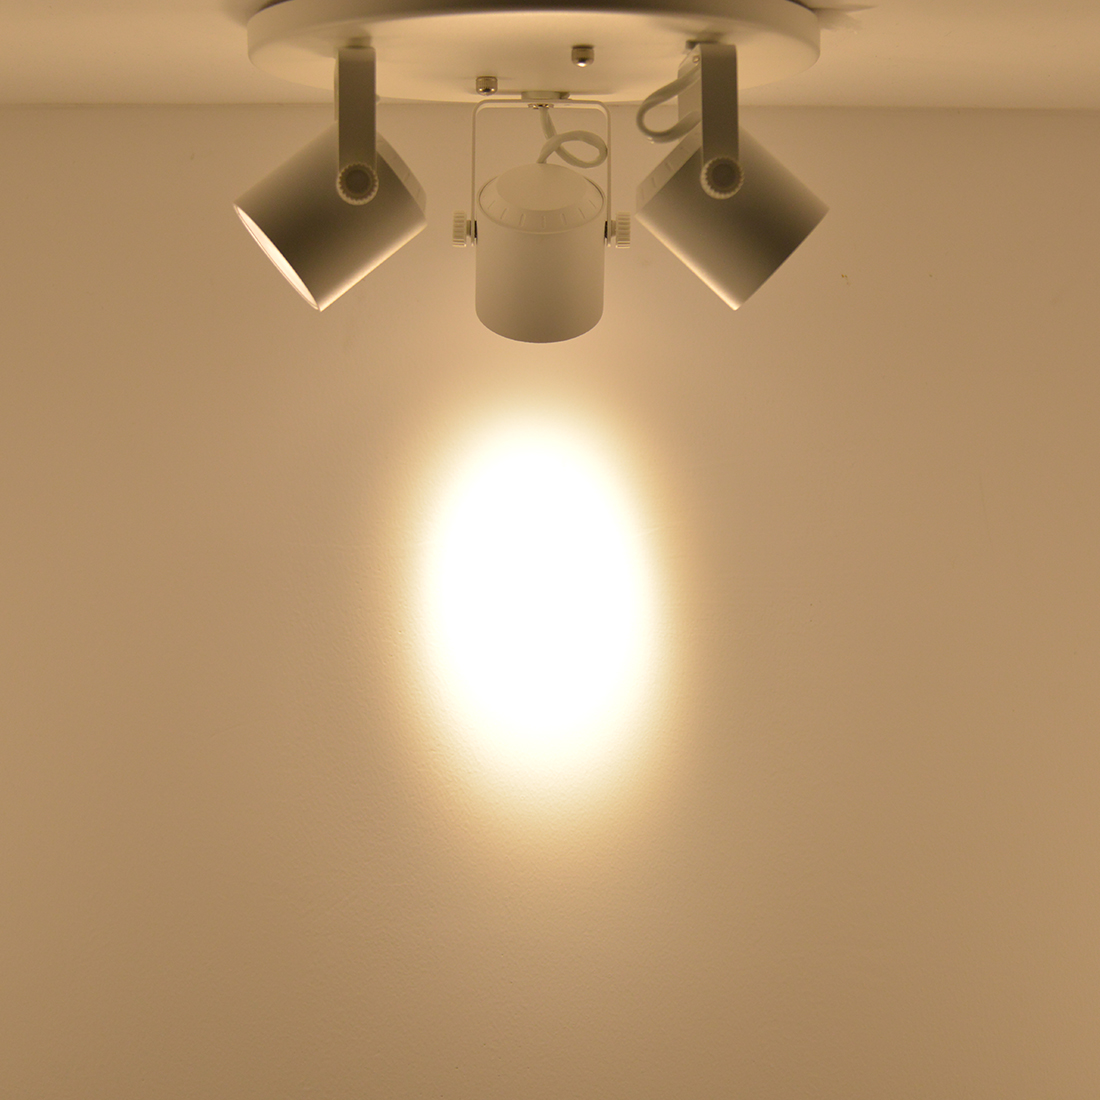 Fox Light Ampoule anti-coupure LED-SMD A75 - 7W - 120° - 4 000K - 3